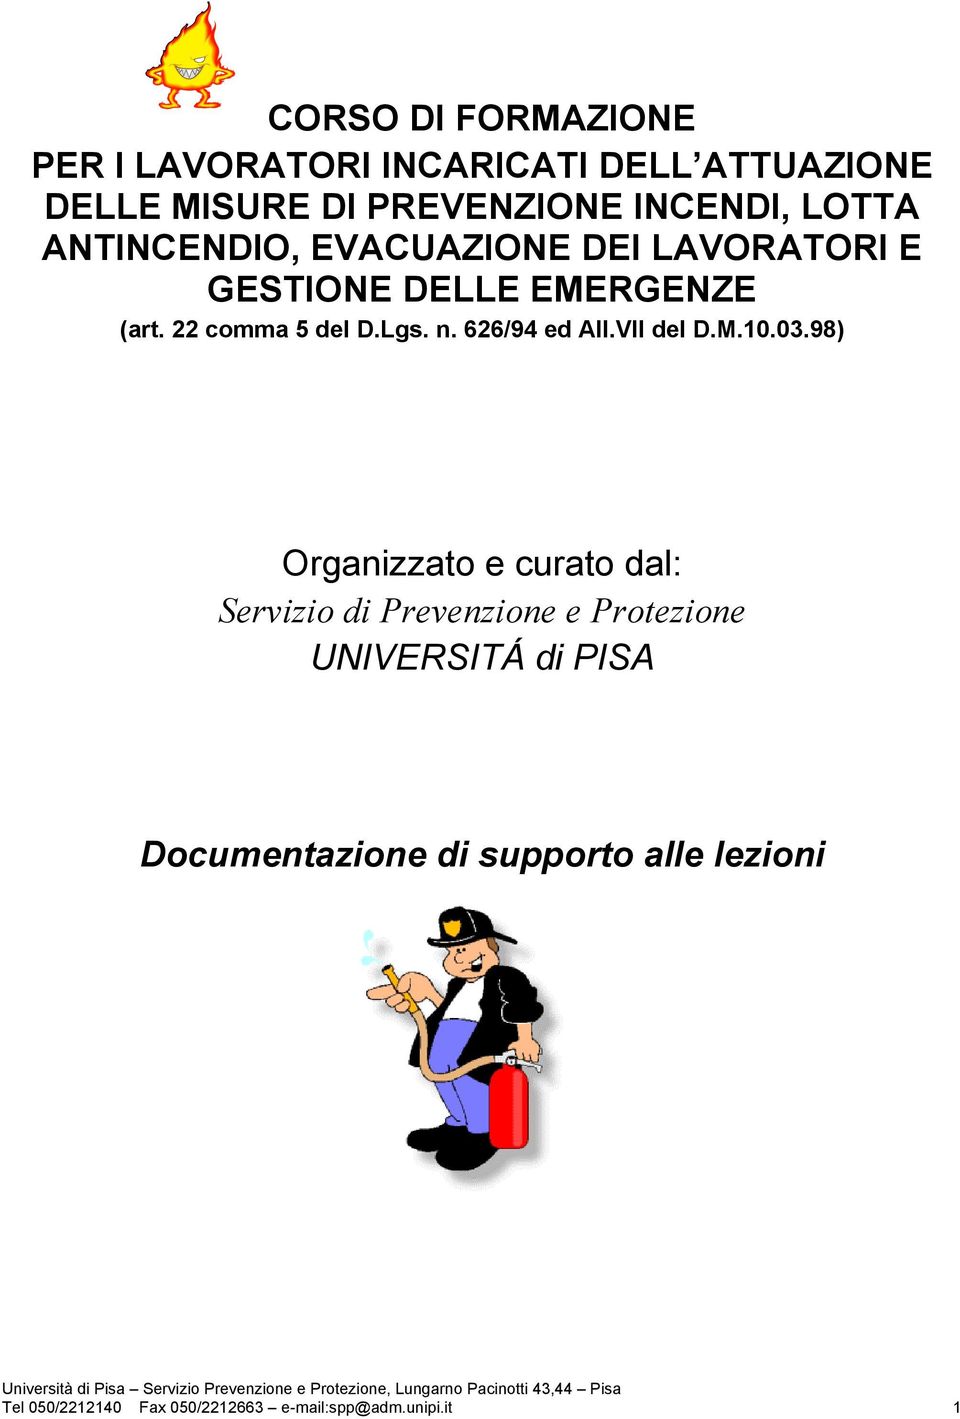 98) Organizzato e curato dal: Servizio di Prevenzione e Protezione UNIVERSITÁ di PISA Documentazione di supporto alle lezioni